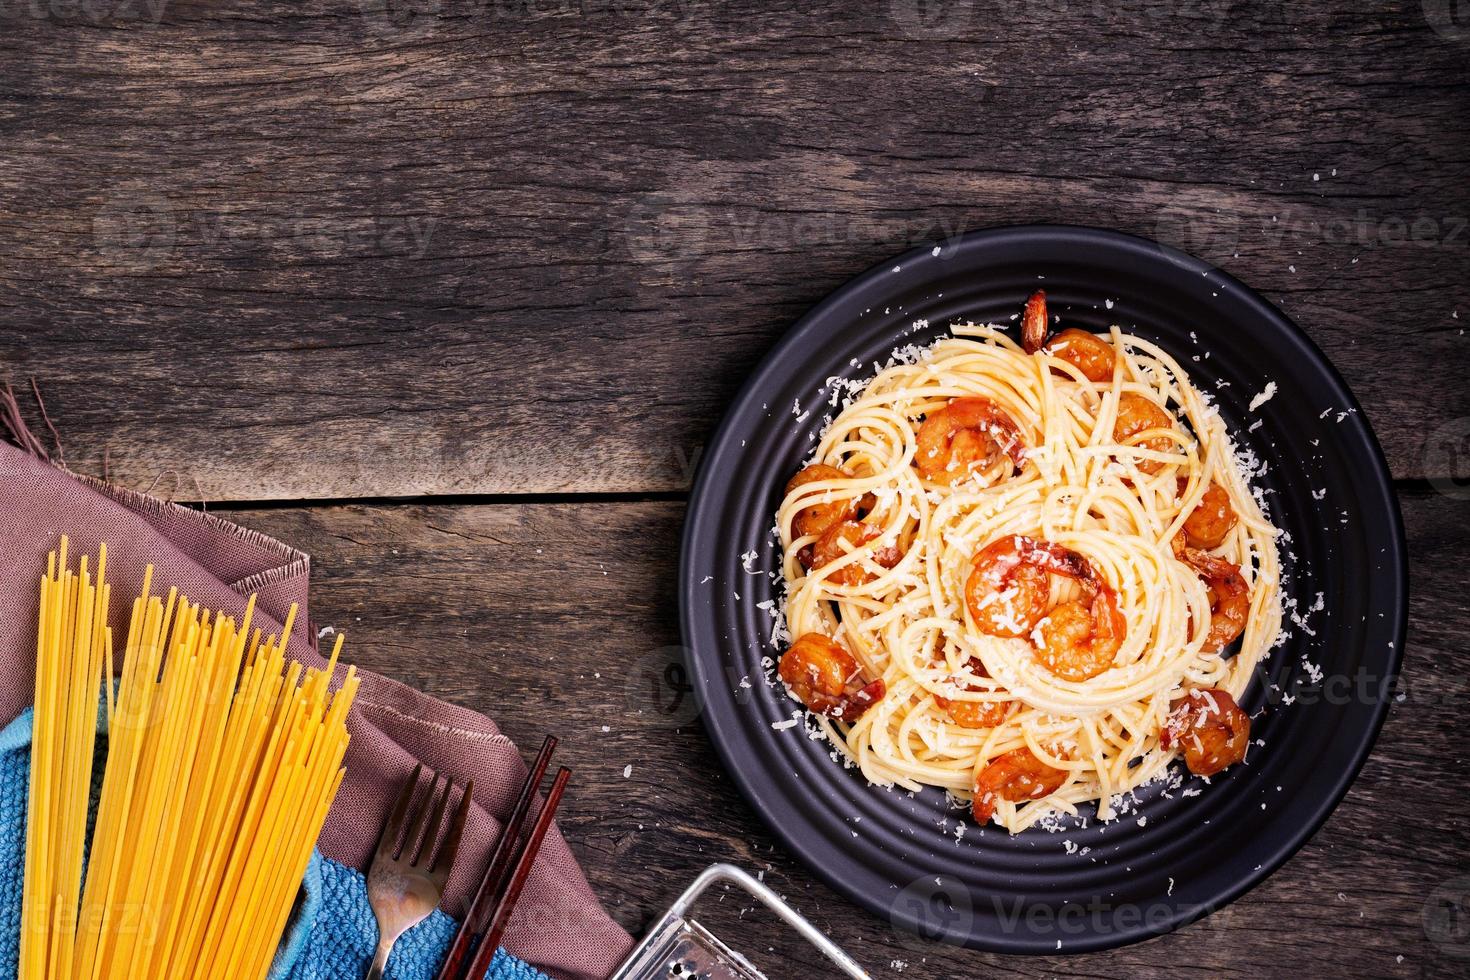 köstliche spaghetti-pasta mit garnelen und käse, serviert in einer schwarzen schüssel auf einem schwarzen hintergrundtisch italienisches rezept, tomatensoße, gemüse und gewürze draufsicht mit kopienraum foto